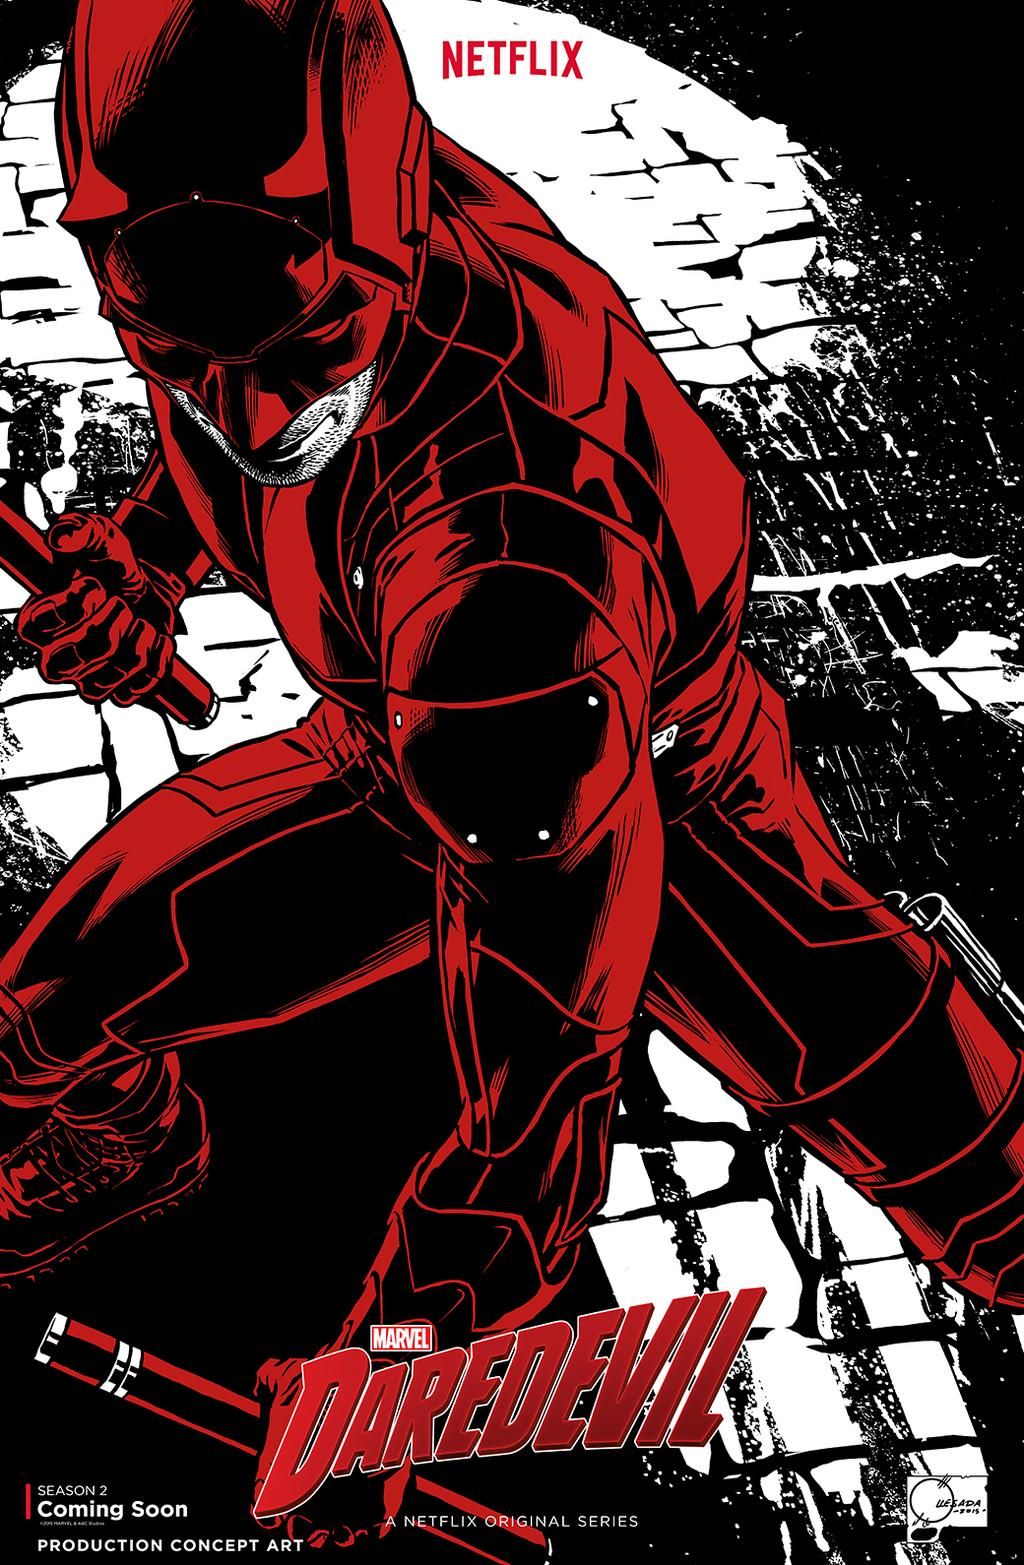 Daredevil Concept Art Released